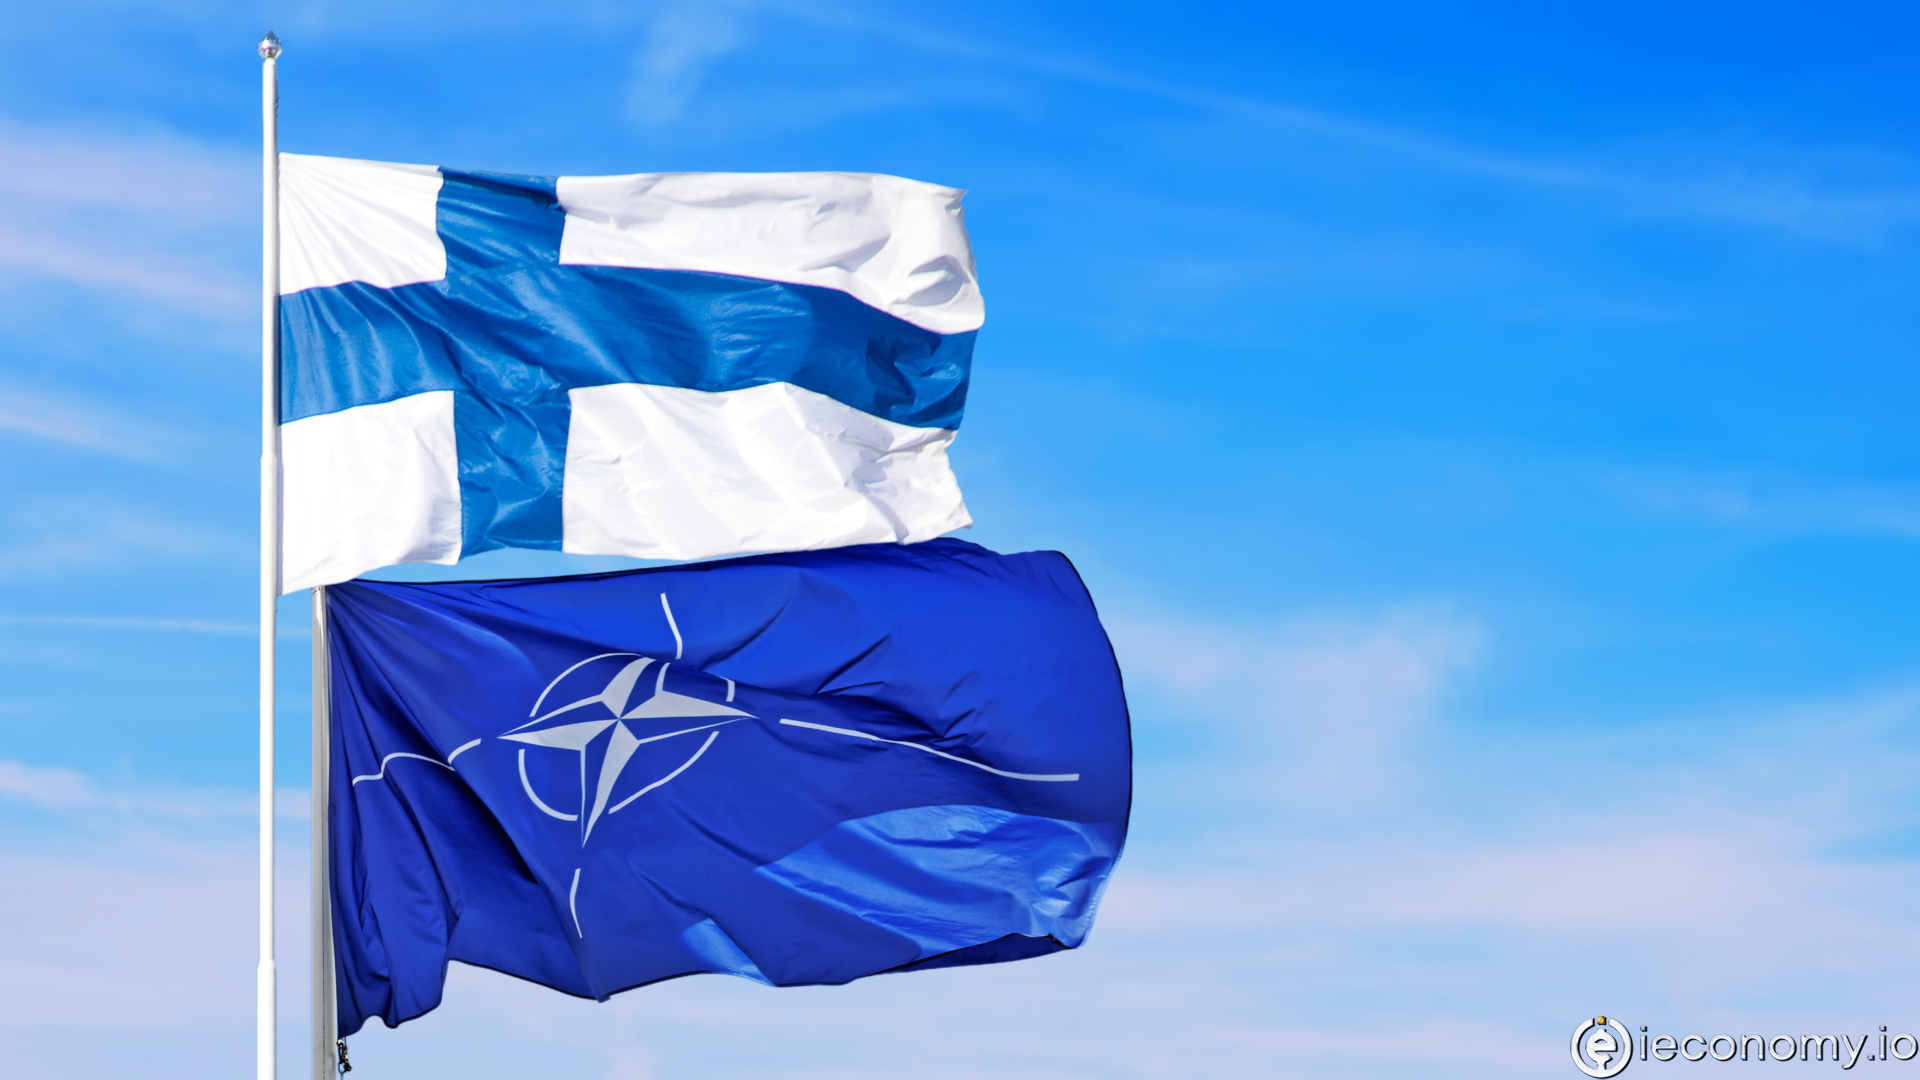 Sauli Niinistö: "NATO üyeliği için resmen başvuracağız"